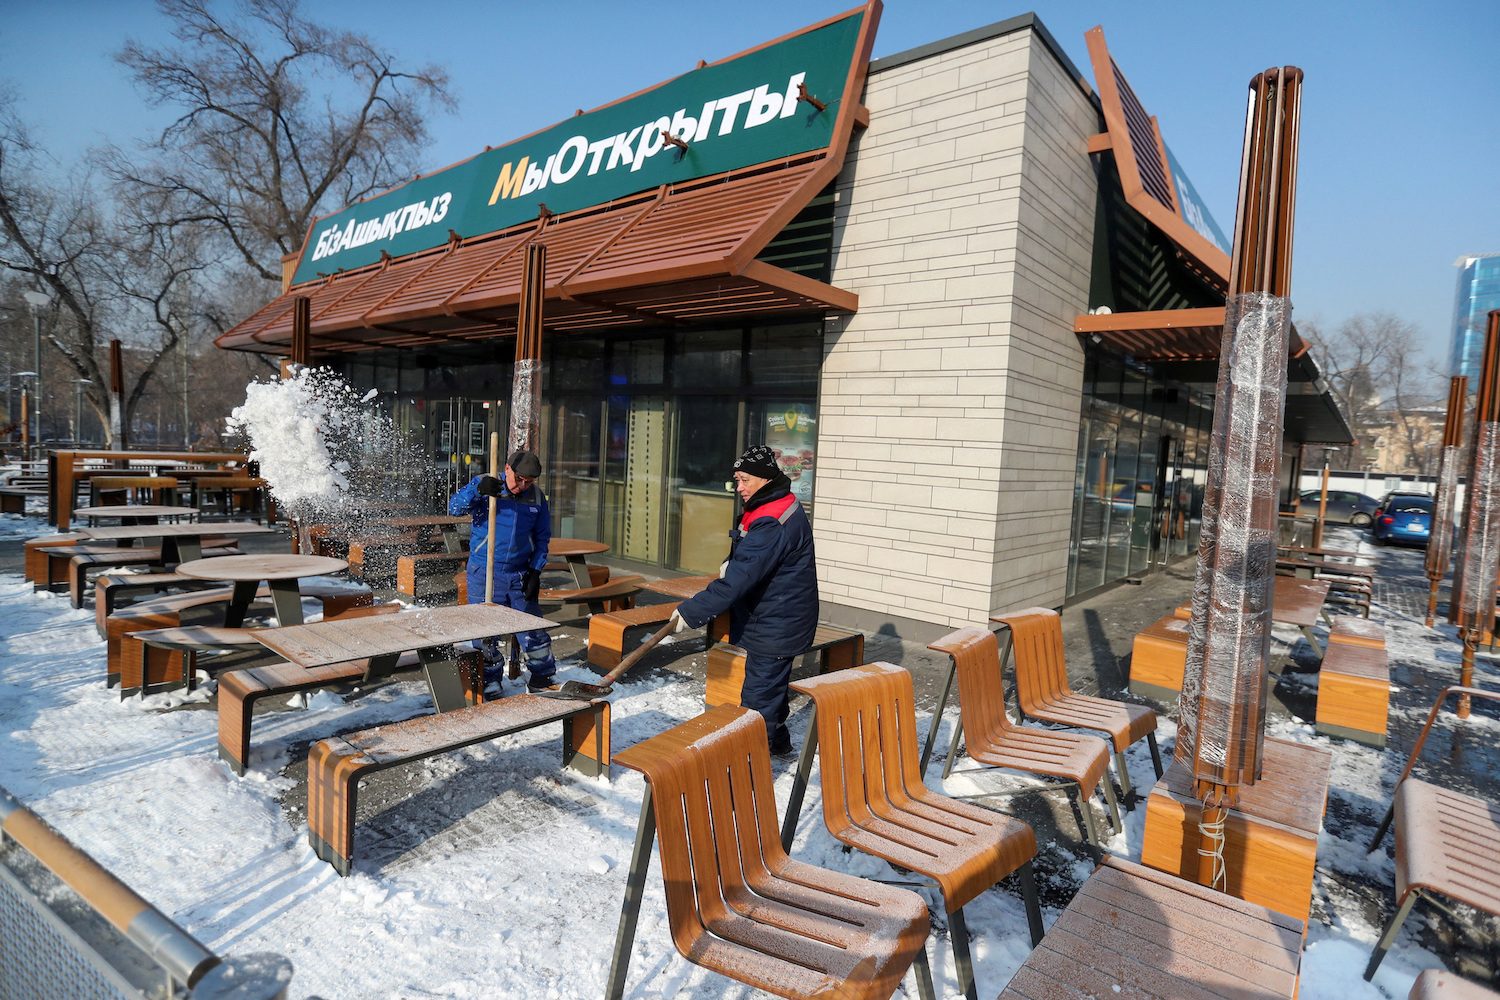 Former McDonald’s restaurants reopen without branding in Kazakhstan